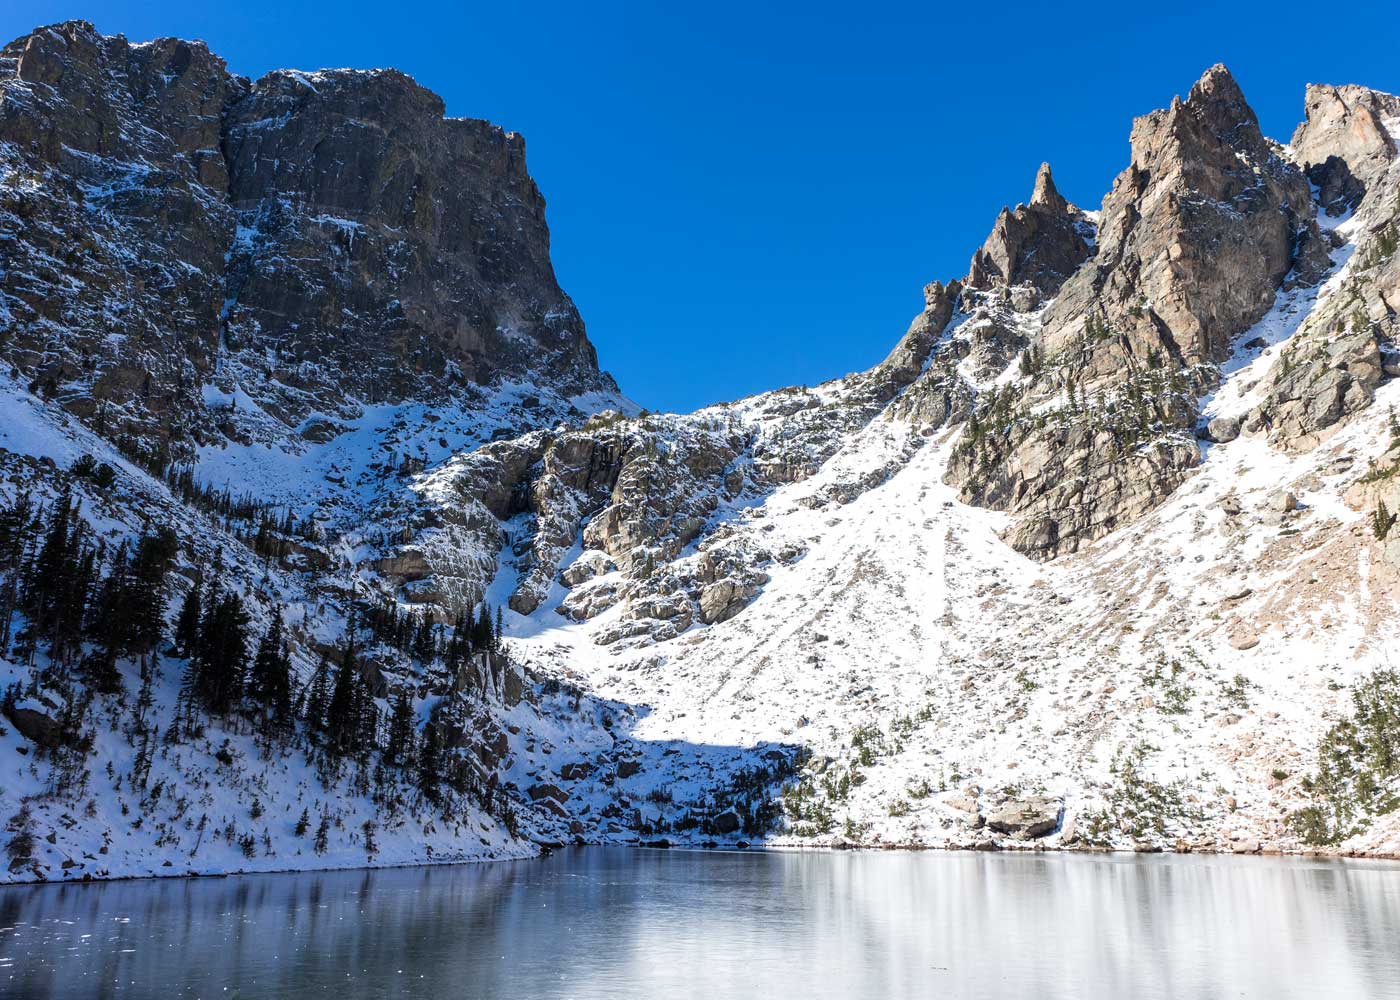 Alle Infos zur Wanderung zum Emerald Lake in den Rocky Mountains